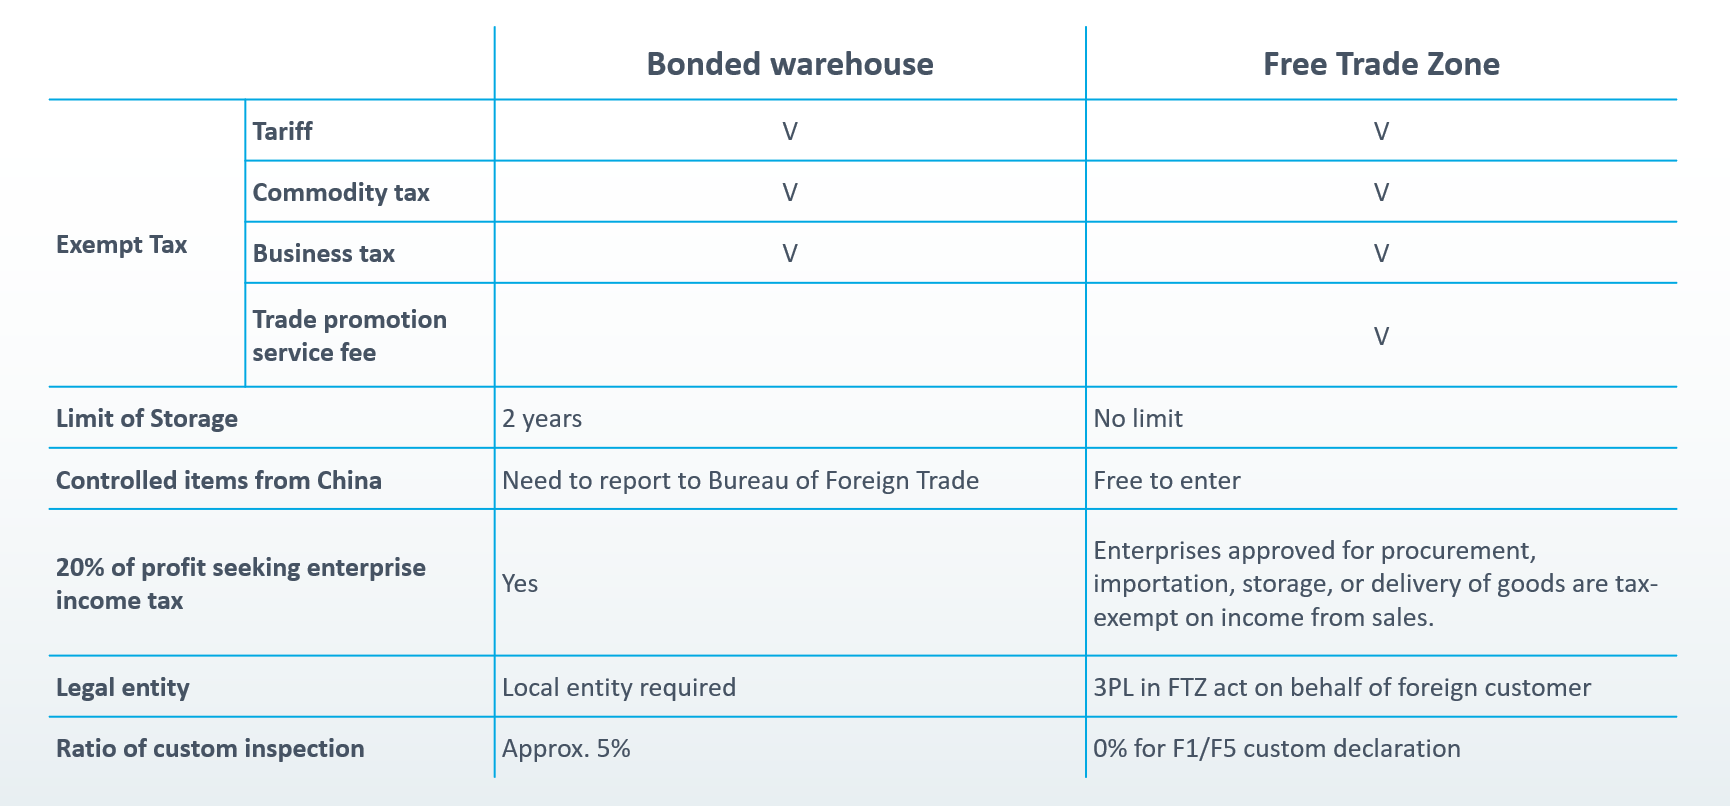 Taiwan Warehouse - Bonded Warehouse vs Free Trade Zone